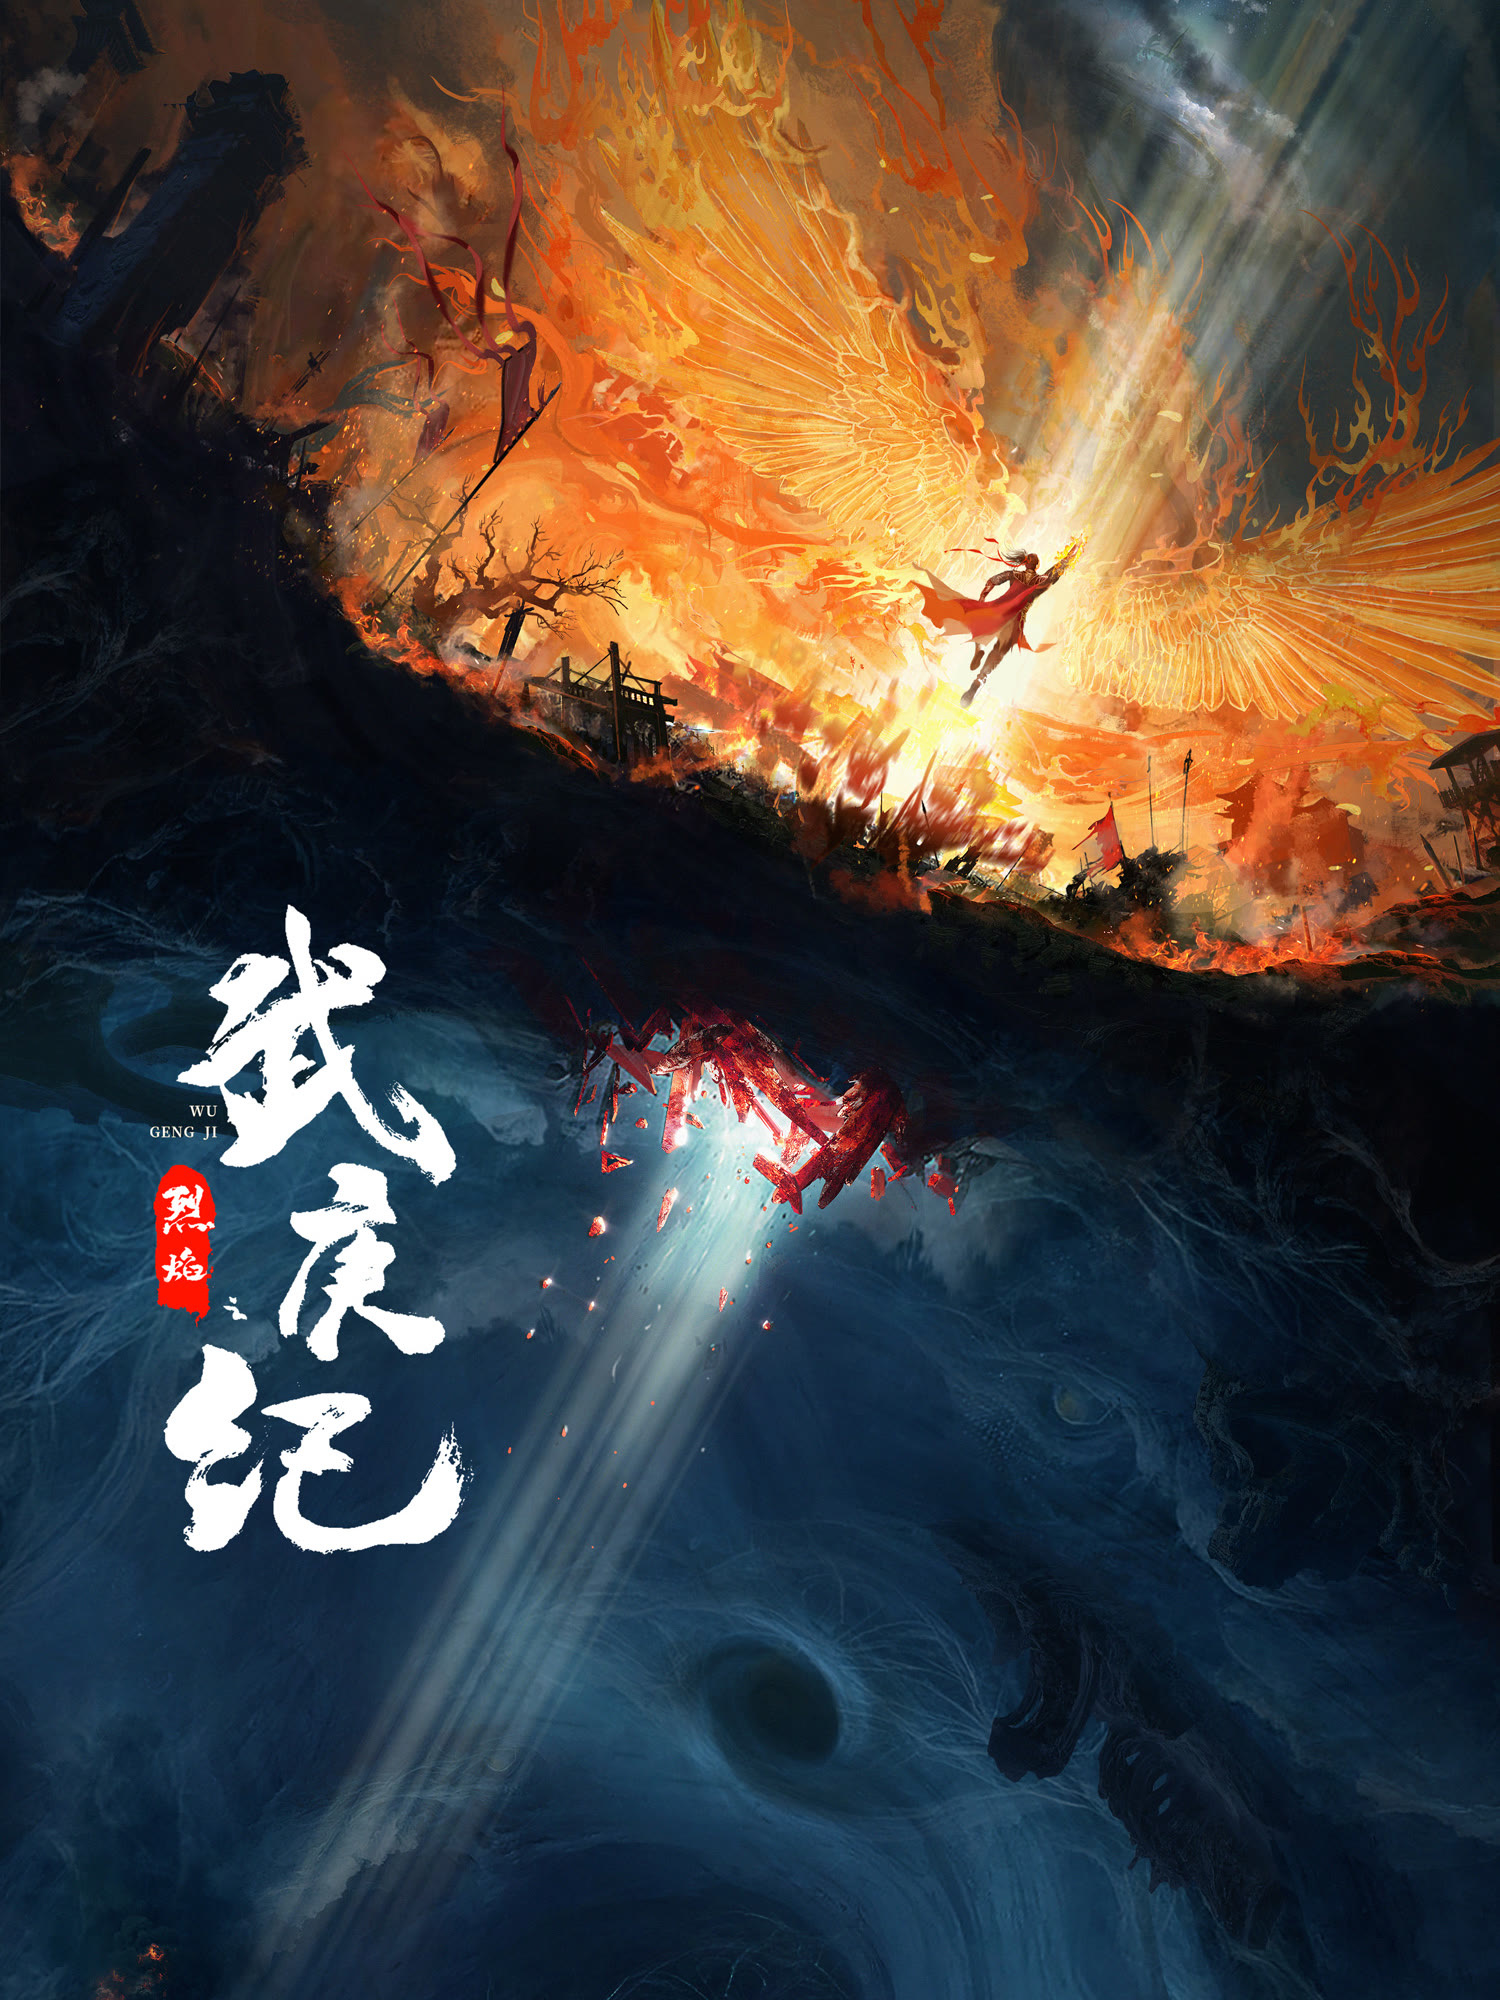 ซีรี่ย์จีน iqiyi-เทพยุทธ์สะบั้นฟ้าท้าสวรรค์ (Burning Flames)